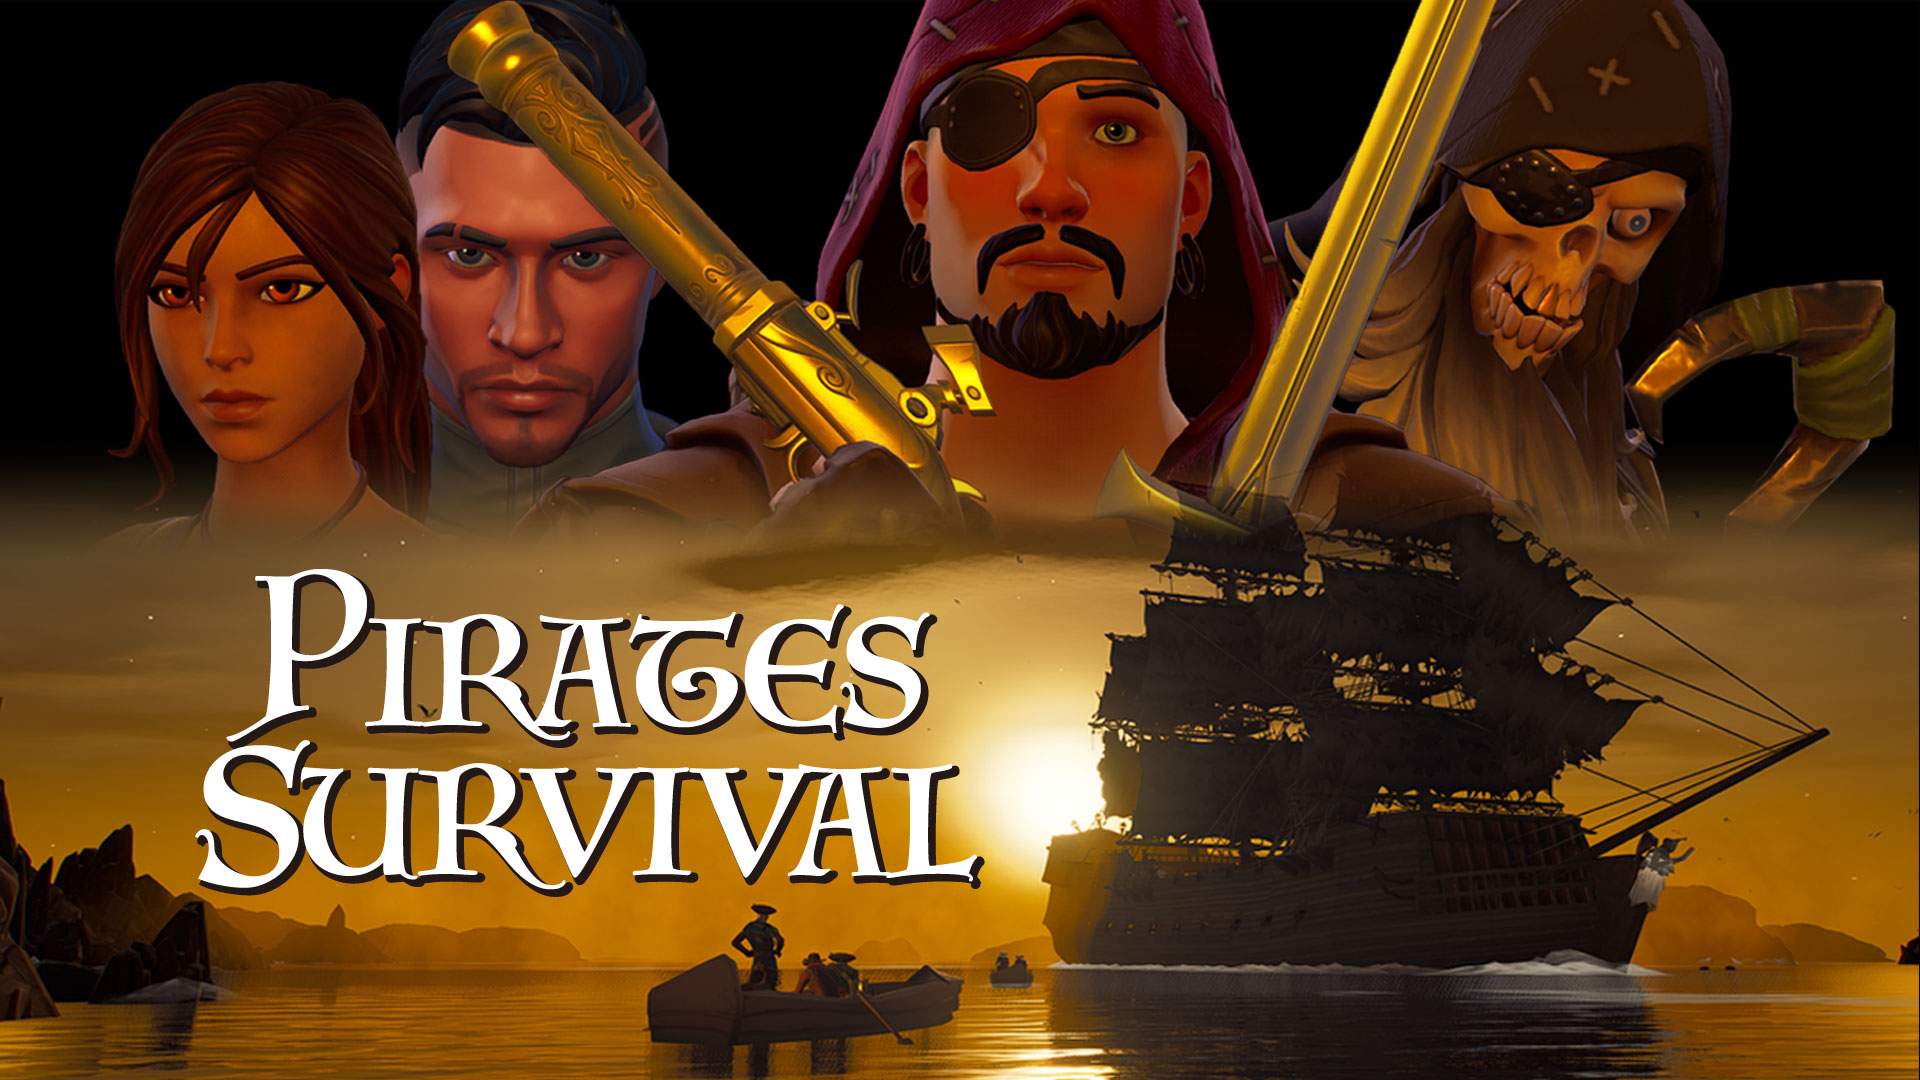 Pirates Survival